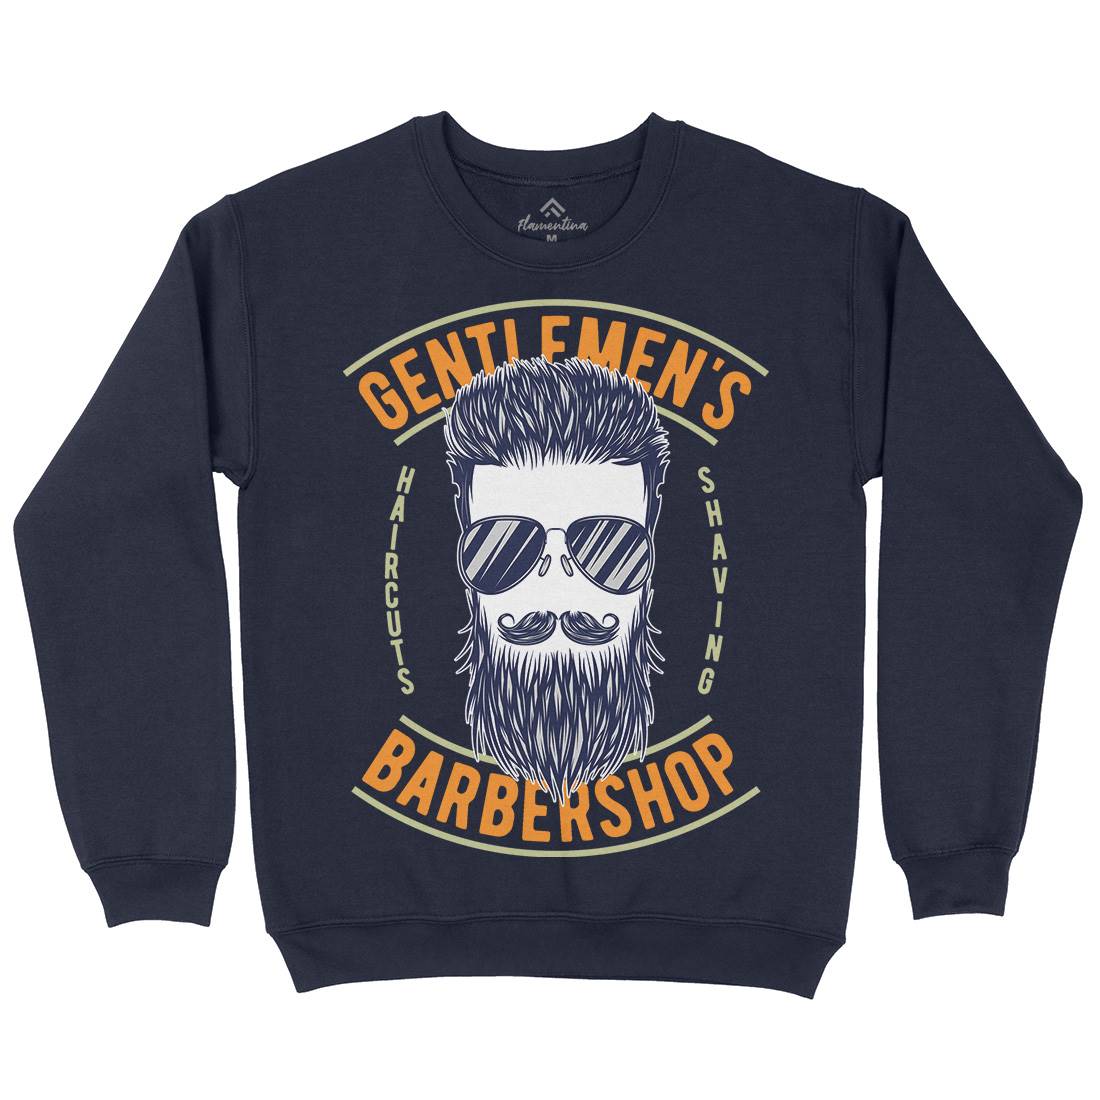 Barbershop Kids Crew Neck Sweatshirt Barber B782